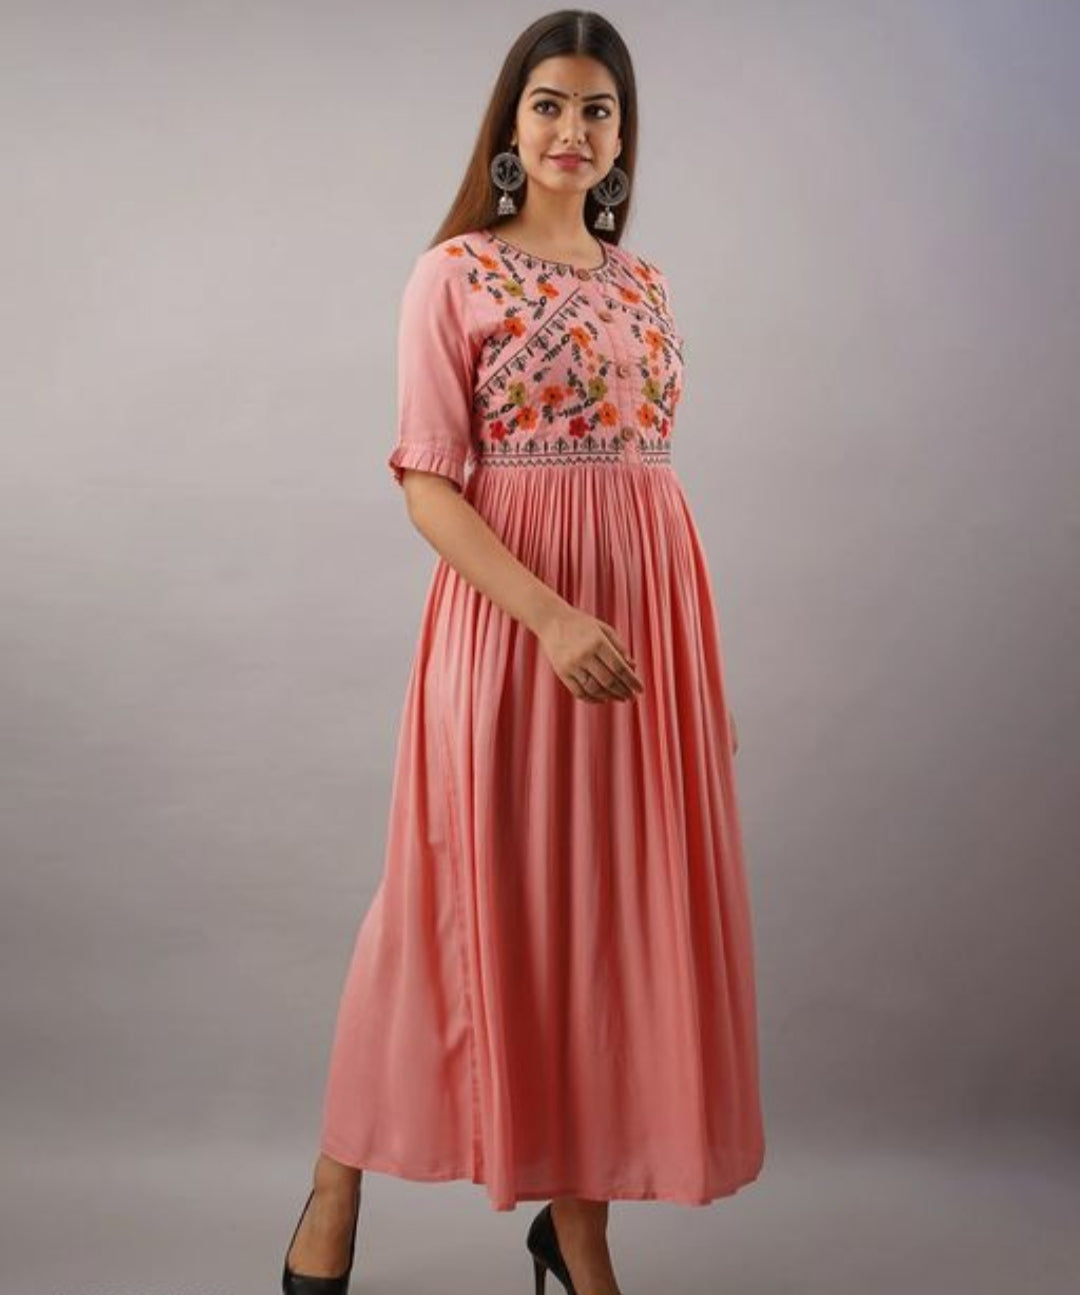 Xenovia Peach Embroidered Maxi Dress.